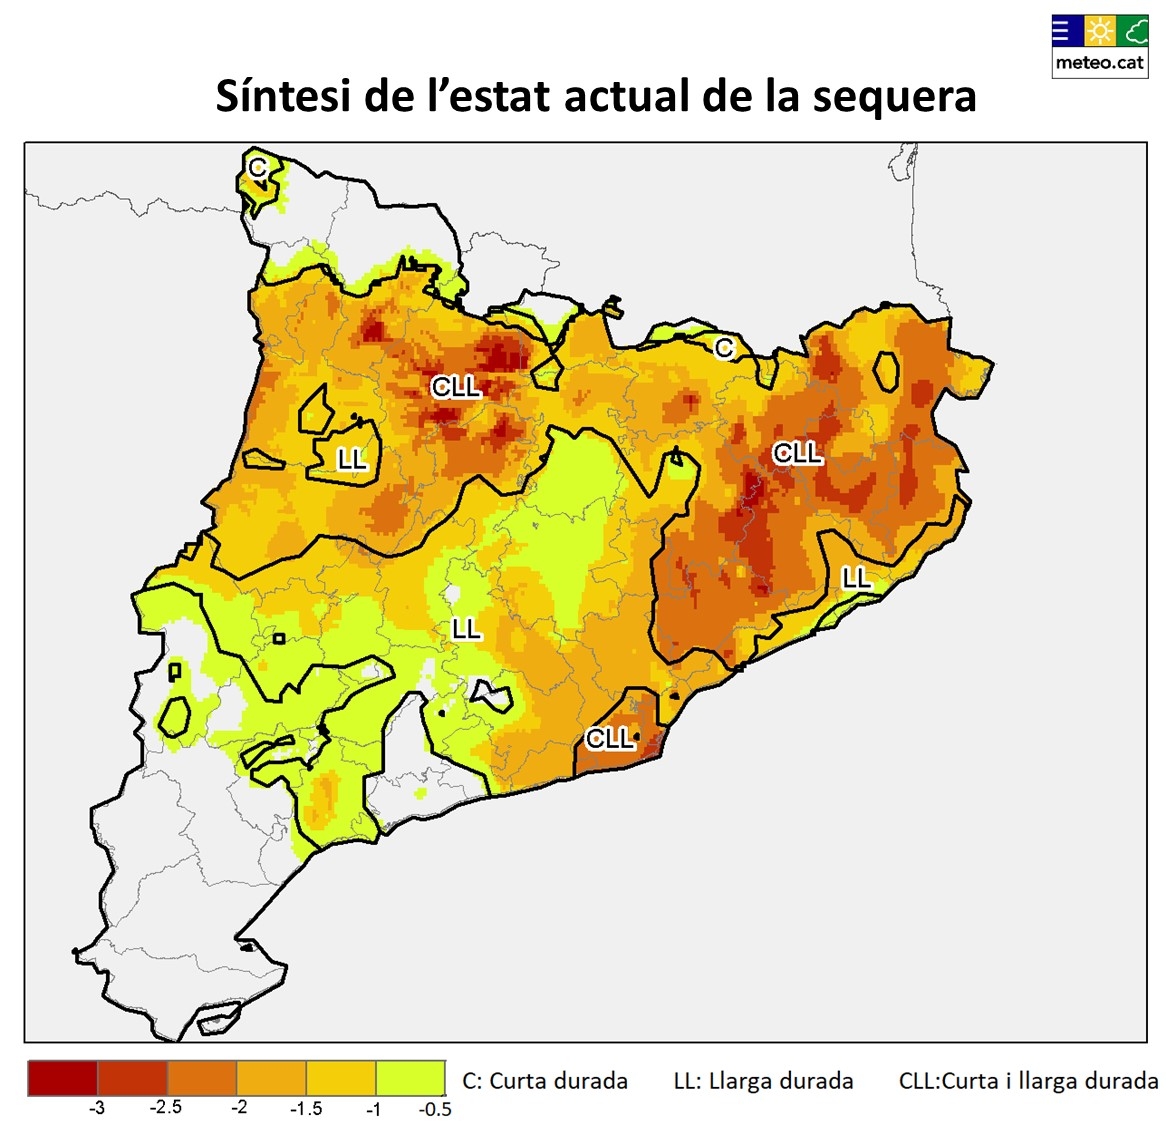 Síntesi de l’estat actual de la sequera a Catalunya a partir de l’estima de les condicions de dèficit hídric a curt (3 i 6 mesos) i llarg termini (12 i 24 mesos).